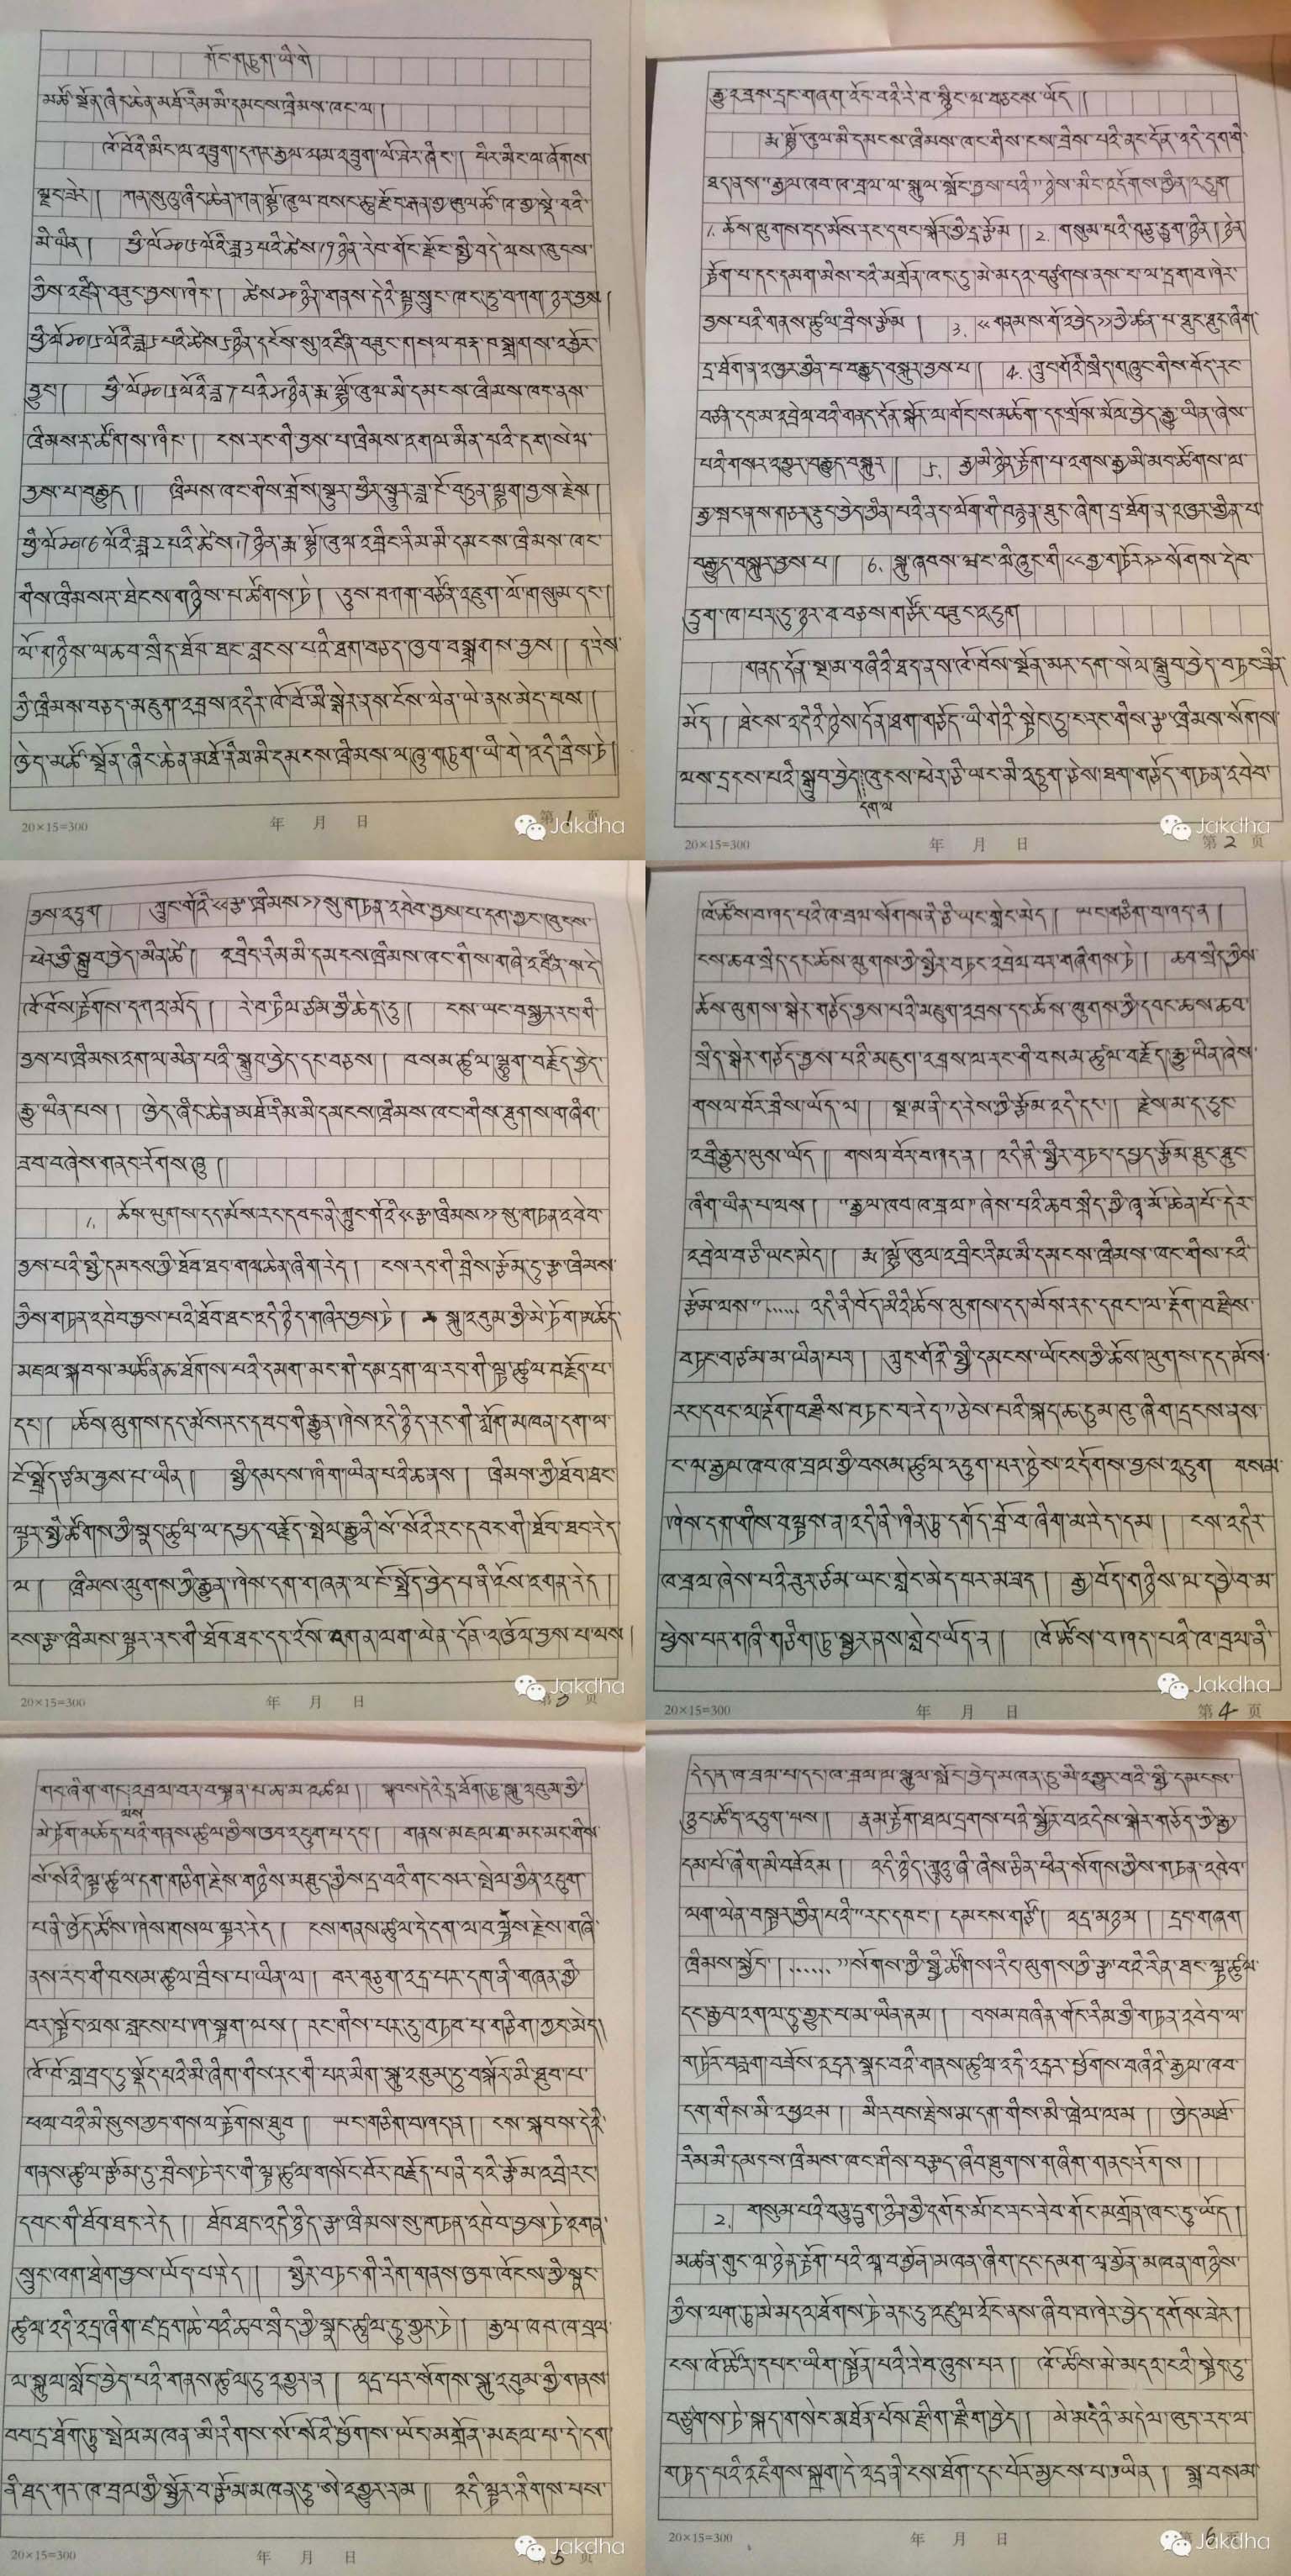 Shokjang's handwritten appeal letter in Tibetan